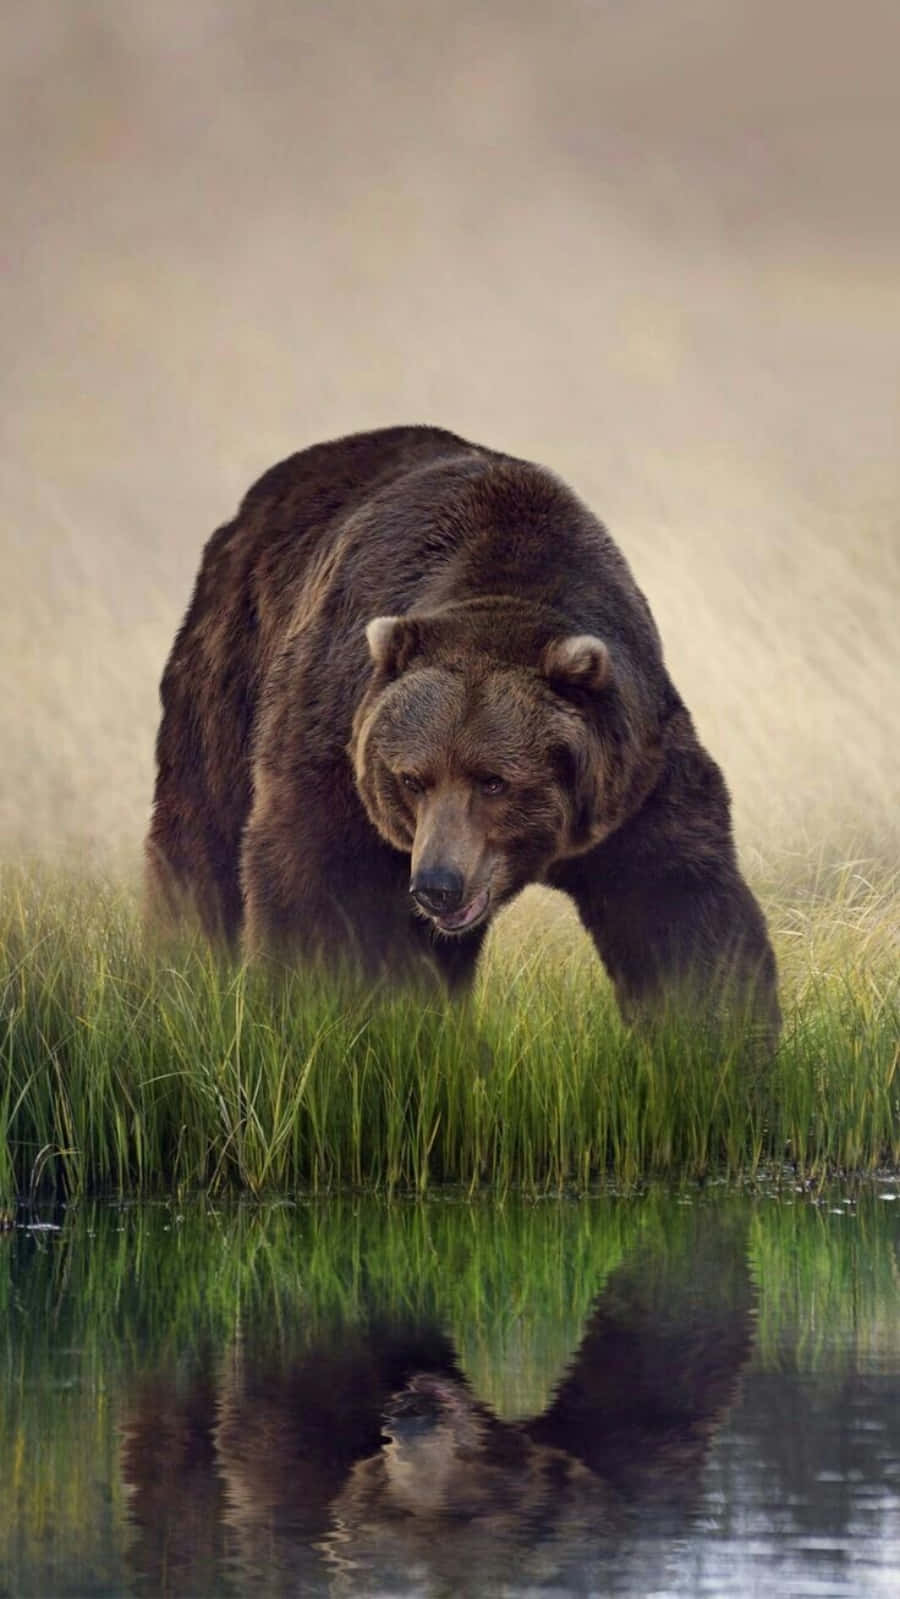 Einunruhiger Brauner Bär, Der Nach Seiner Nächsten Mahlzeit Sucht